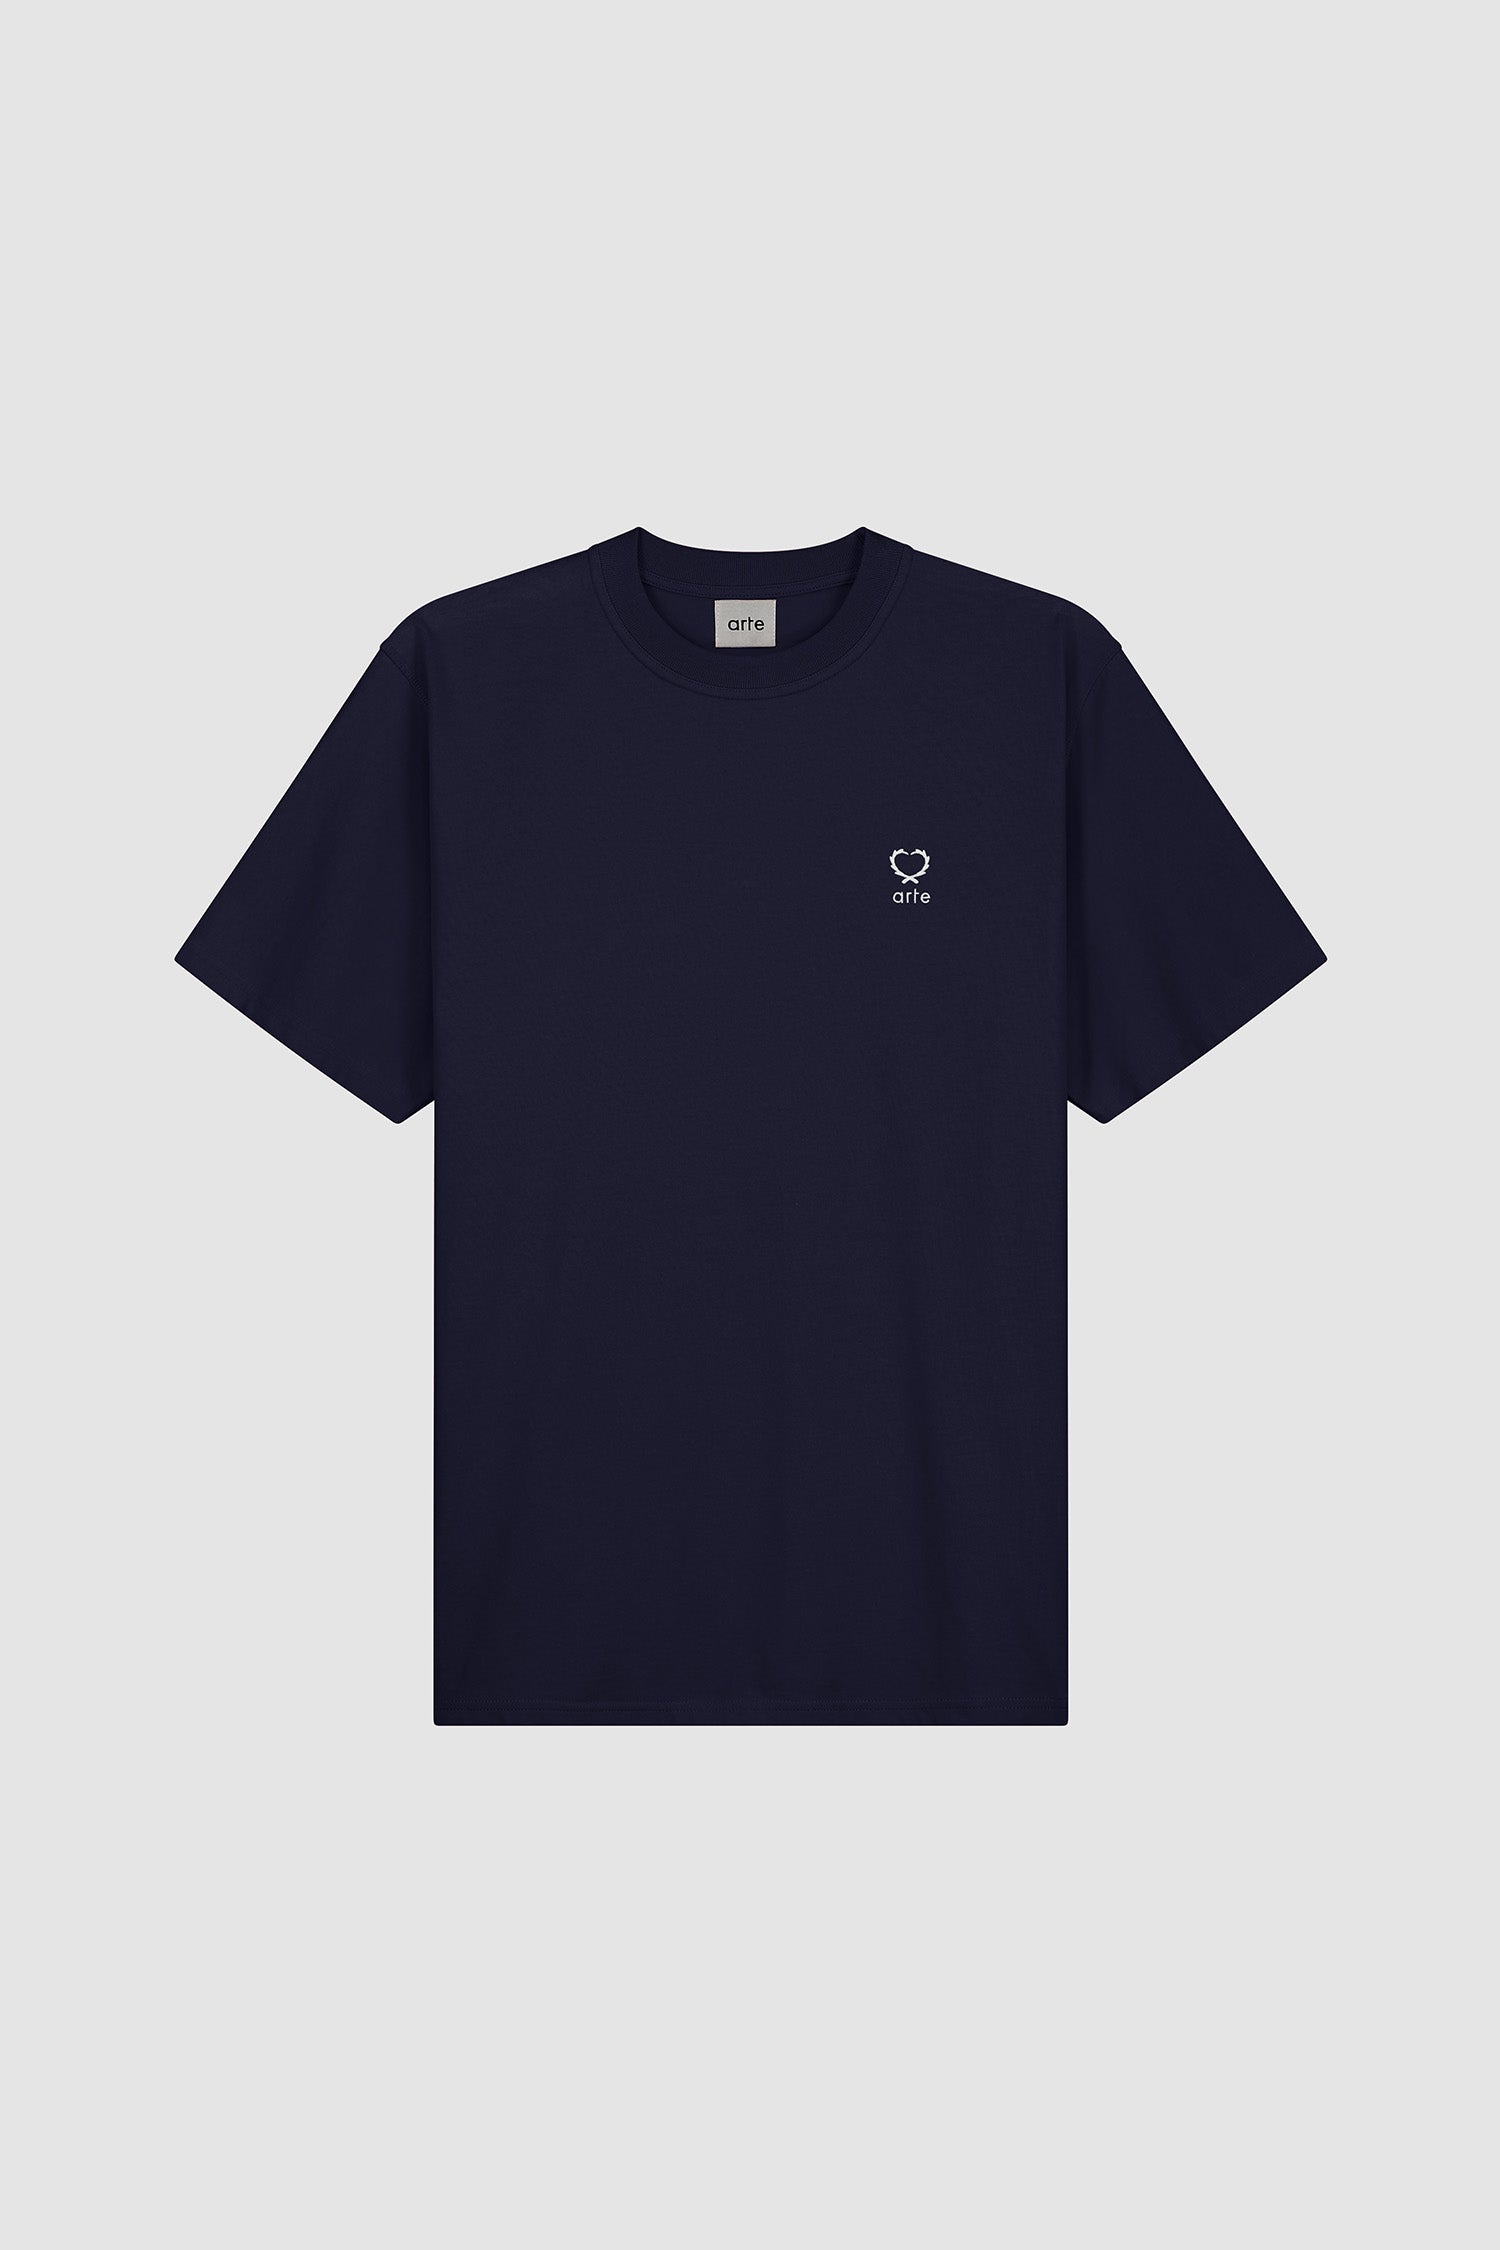 Teo Small Heart T-shirt - Navy